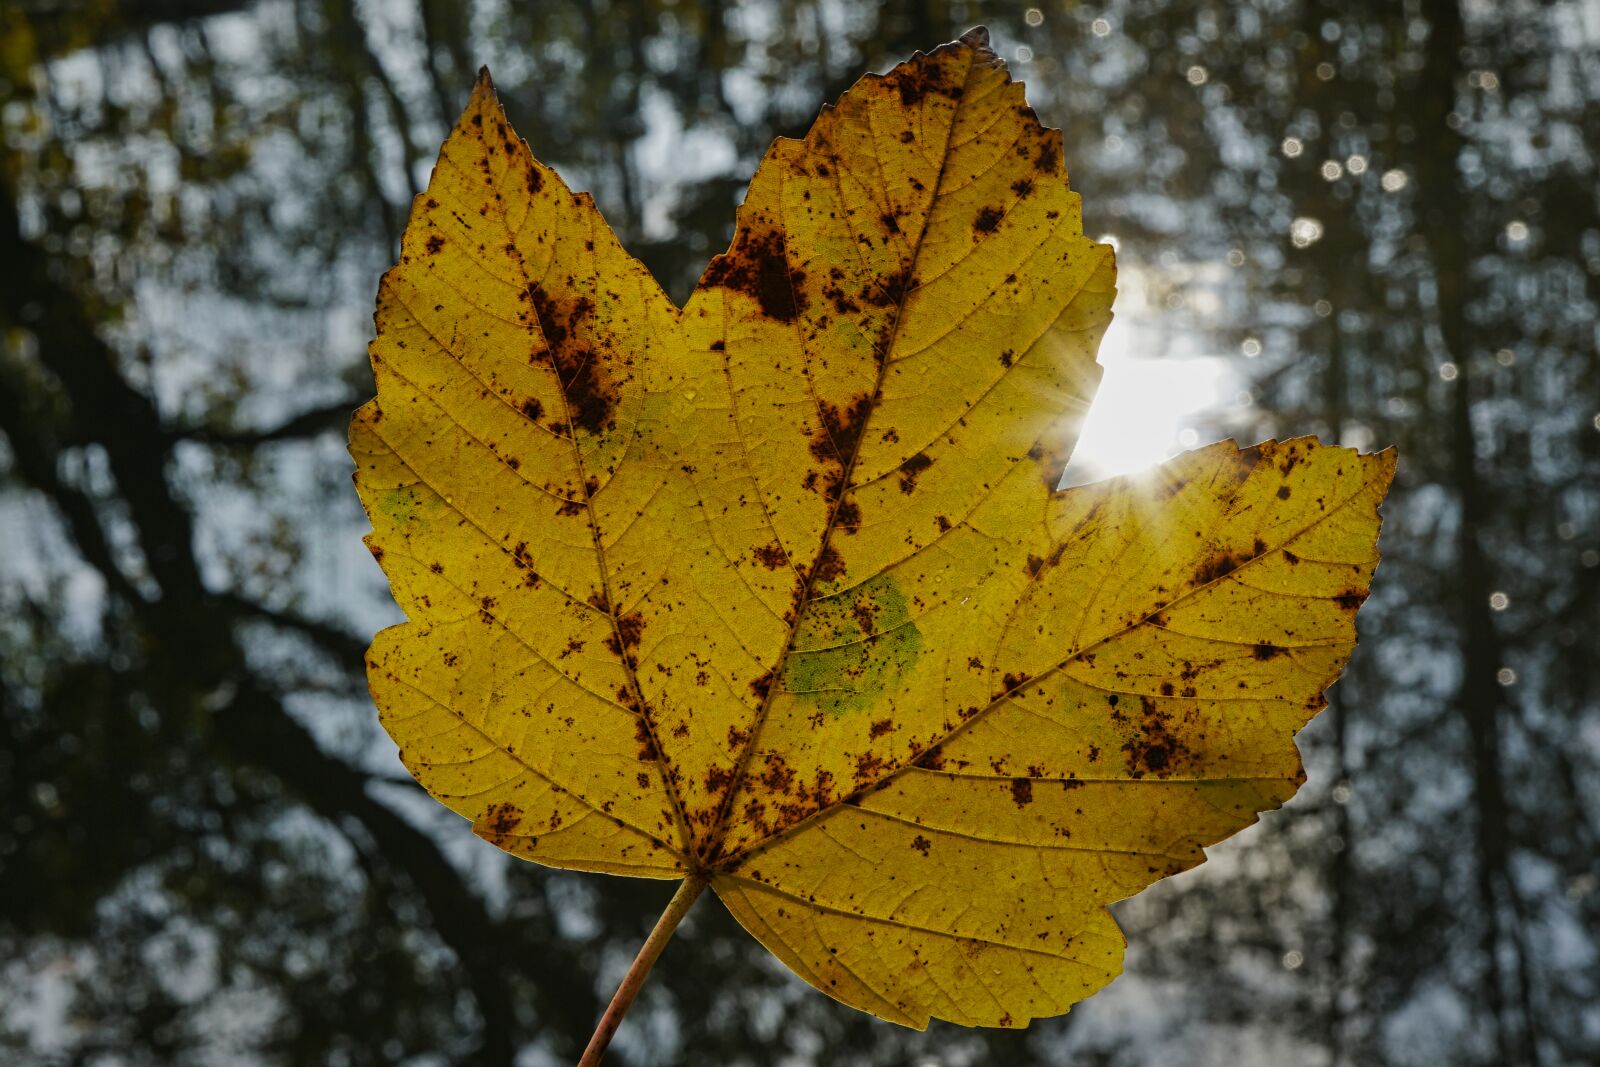 Sony FE 50mm F2.8 Macro sample photo. Autumn, fall foliage, november photography